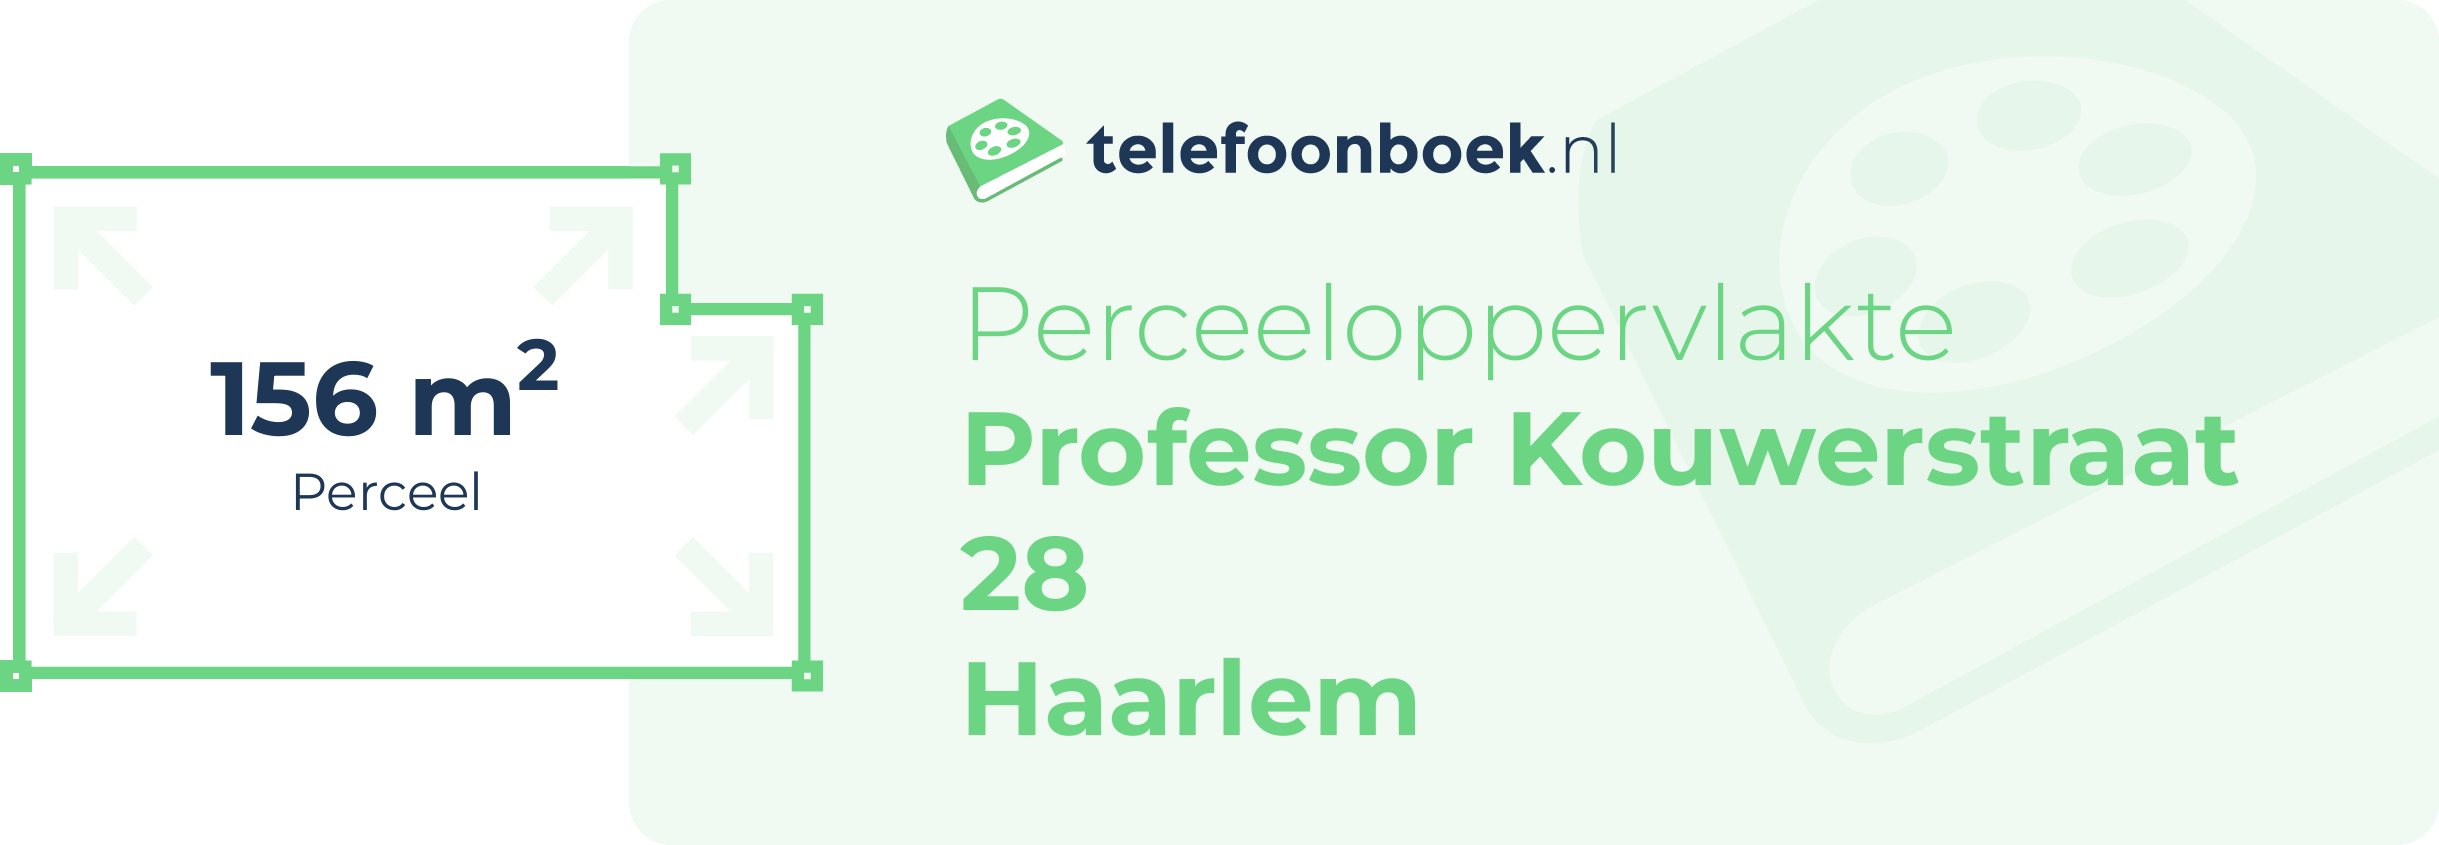 Perceeloppervlakte Professor Kouwerstraat 28 Haarlem